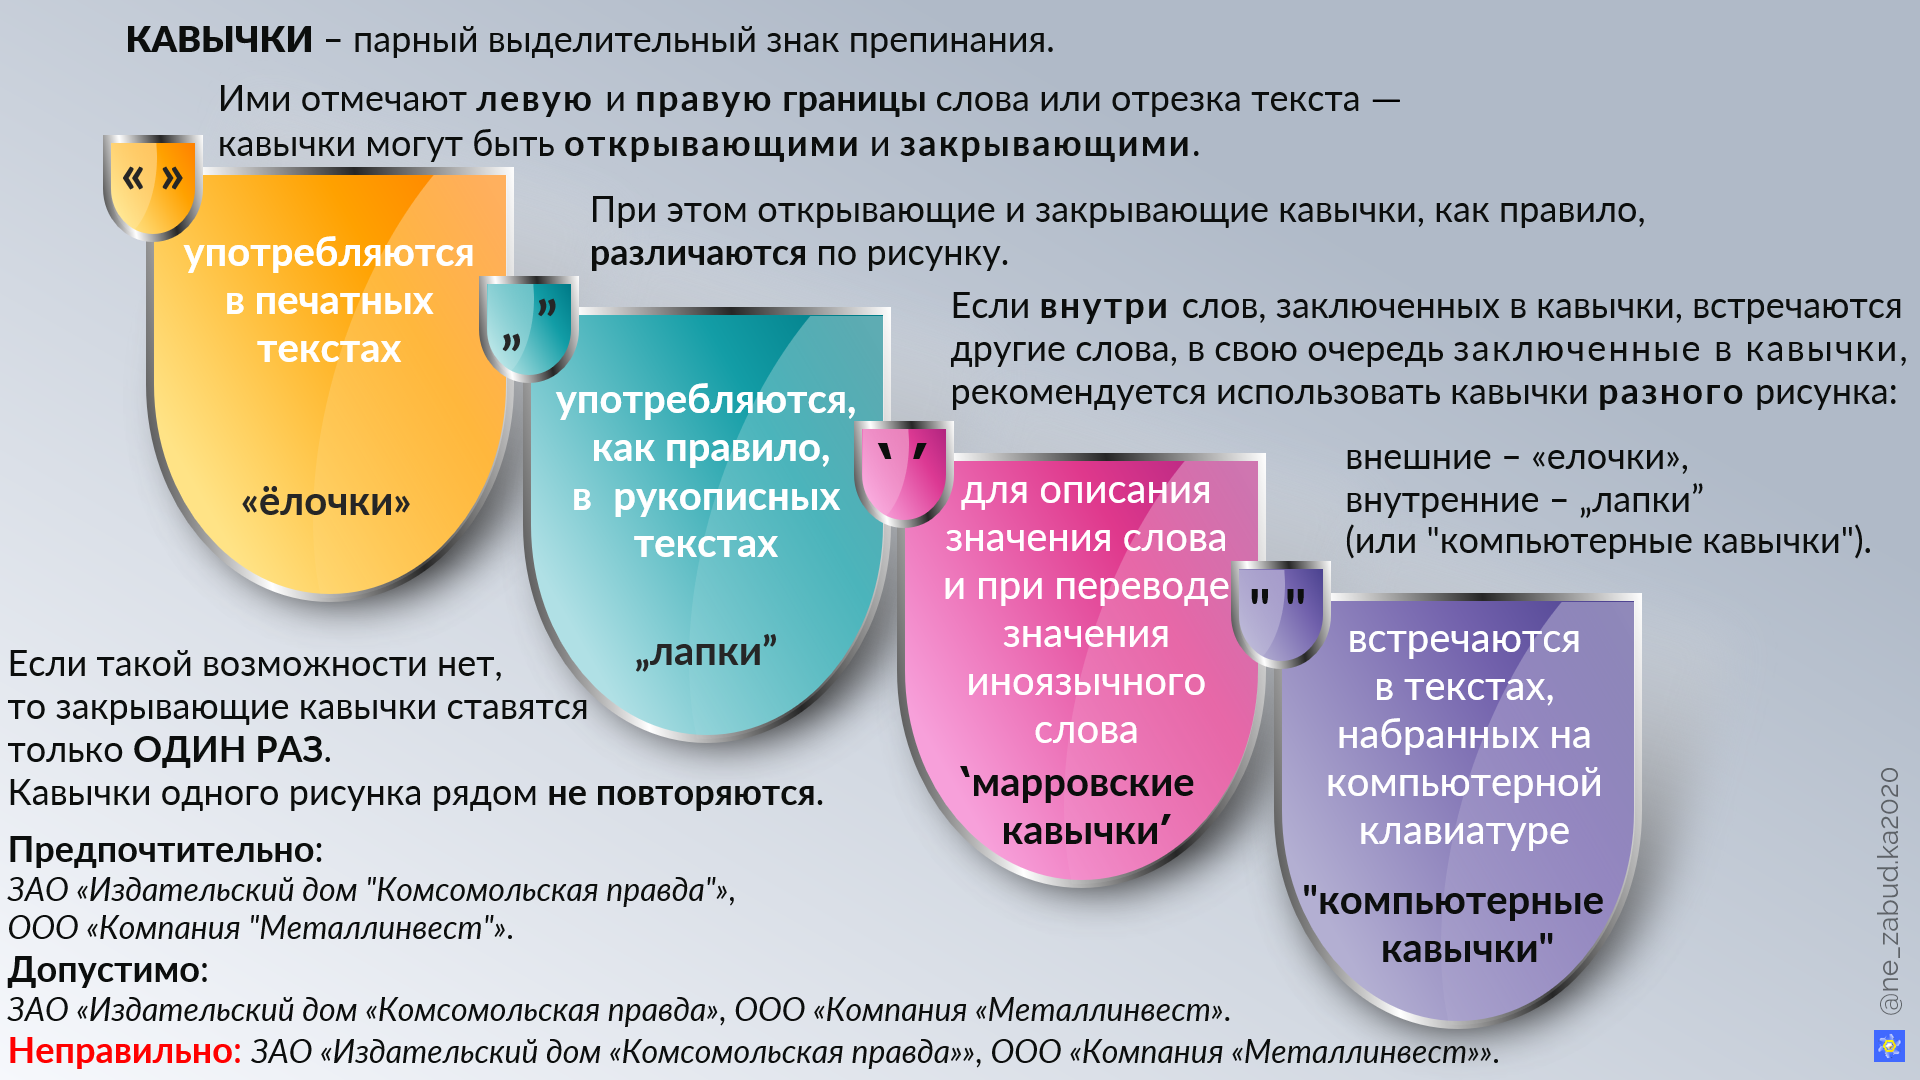 Кавычки: какие бывают (в русском языке) и как их сочетать со знаками препинания?